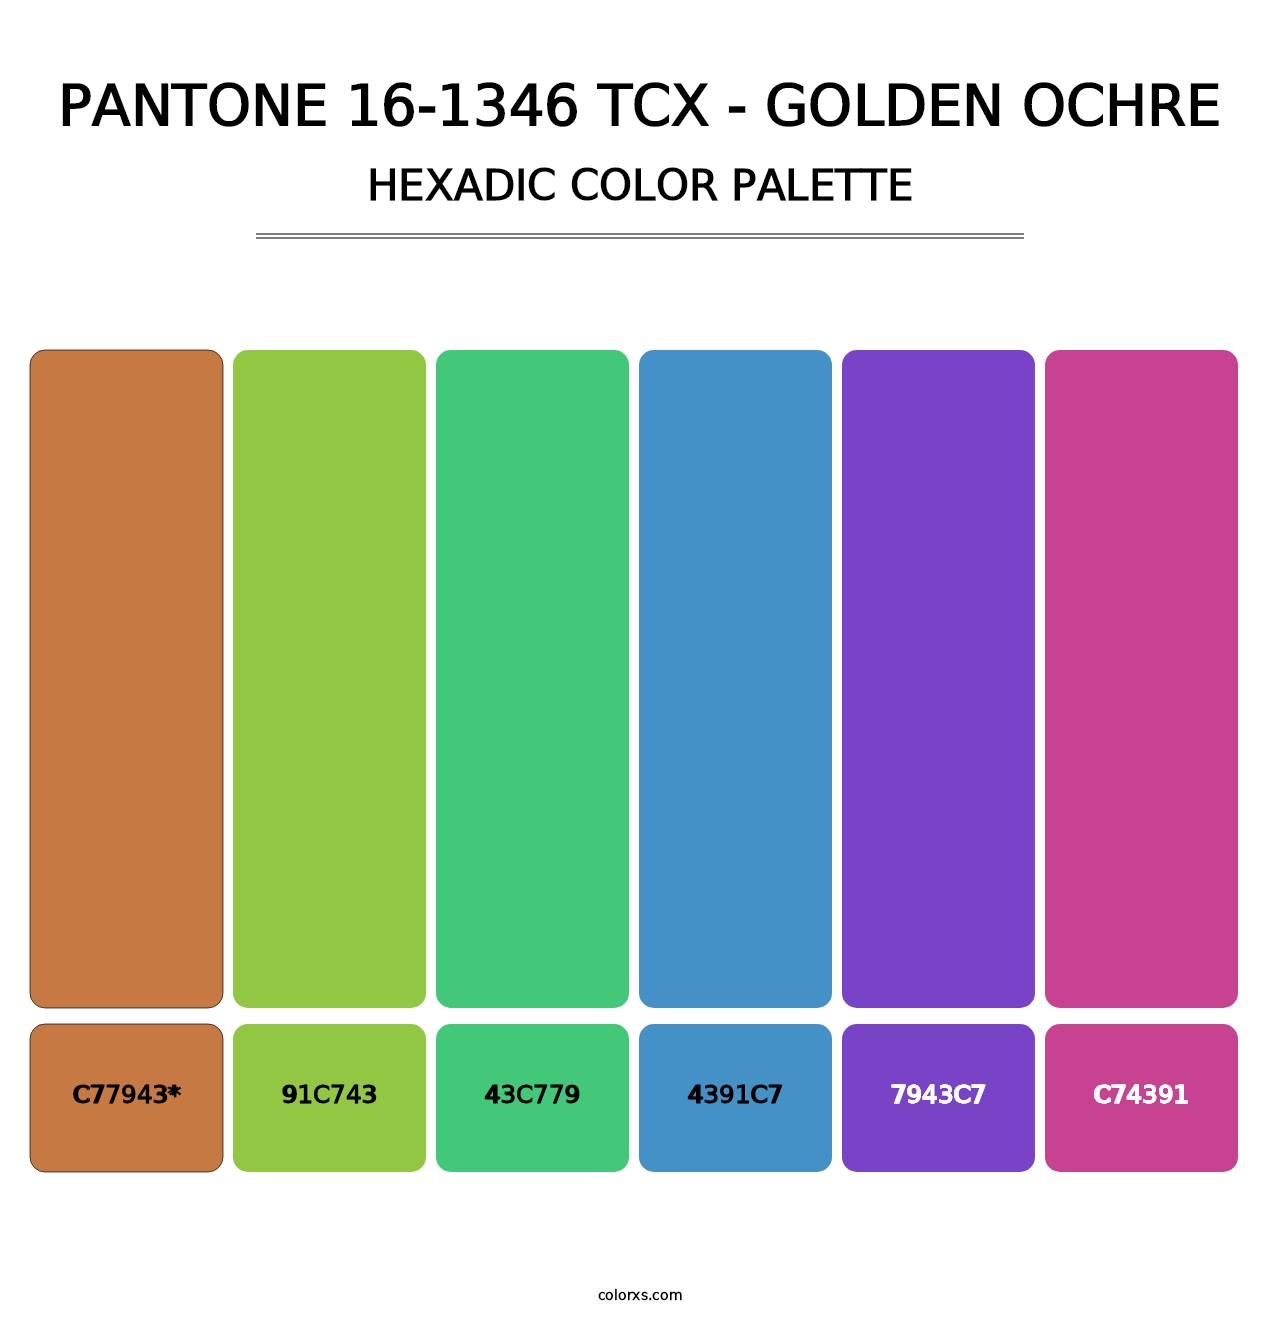 PANTONE 16-1346 TCX - Golden Ochre - Hexadic Color Palette